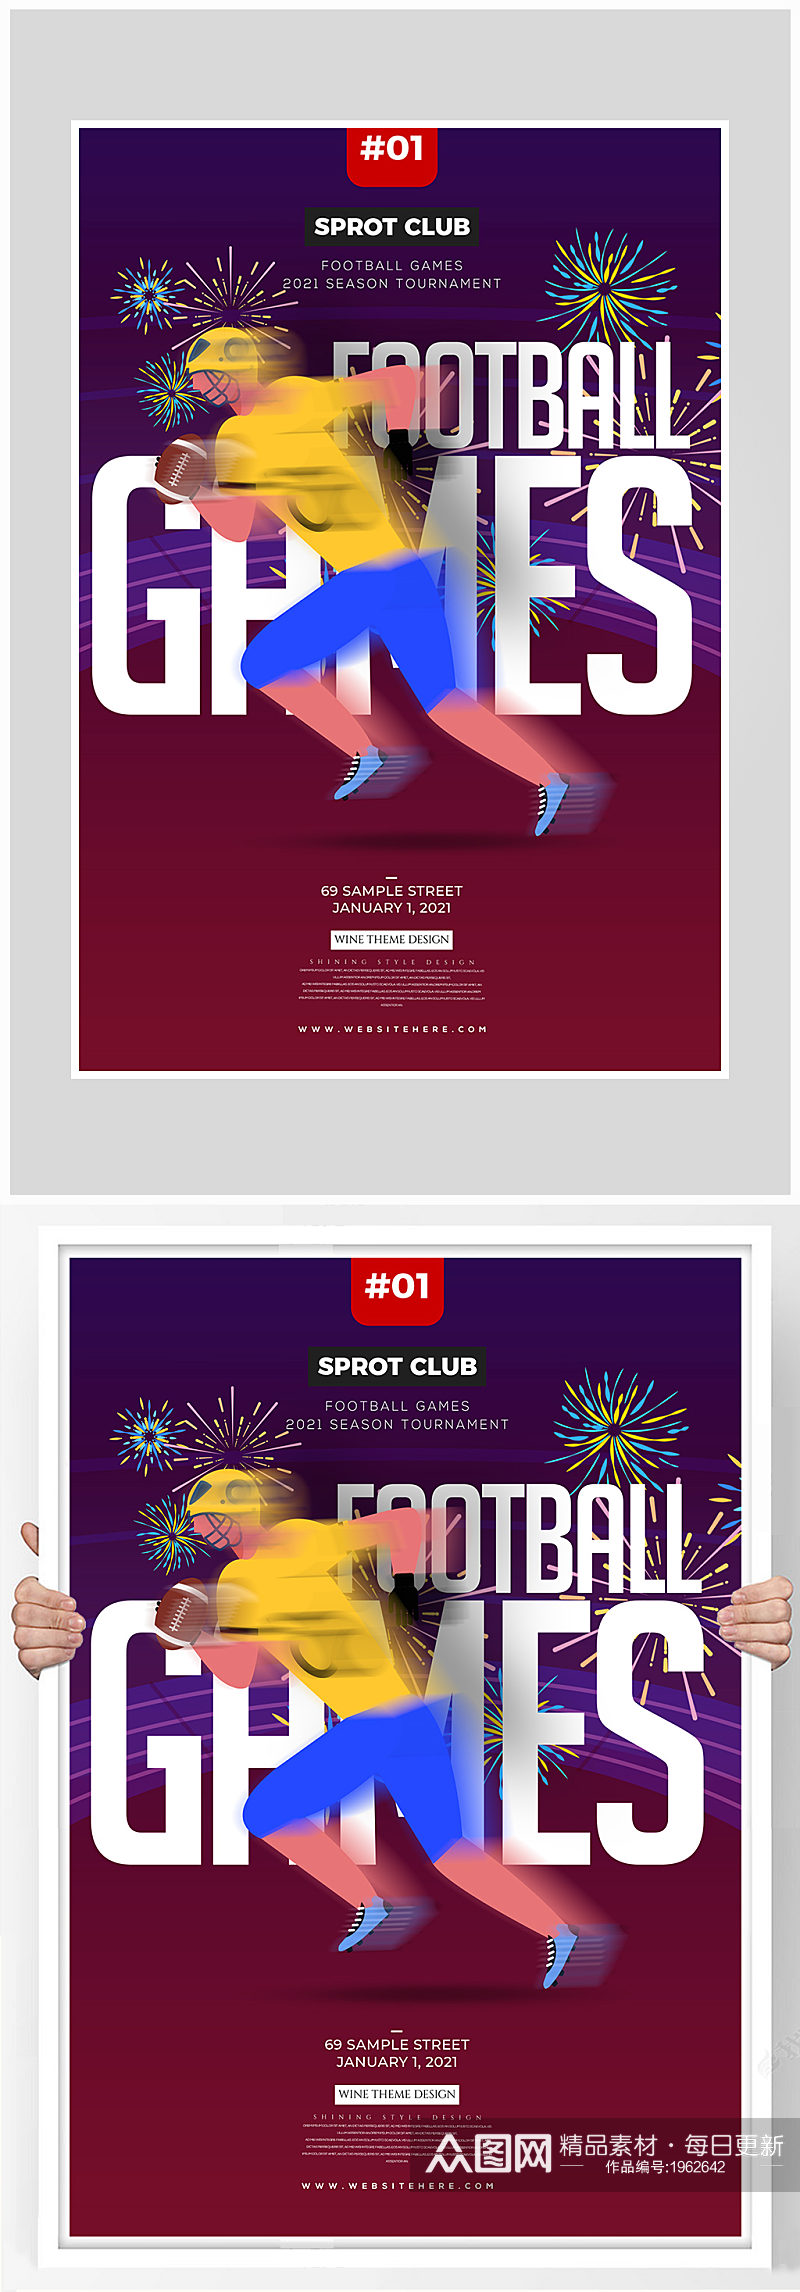 创意质感橄榄球运动比赛海报设计素材